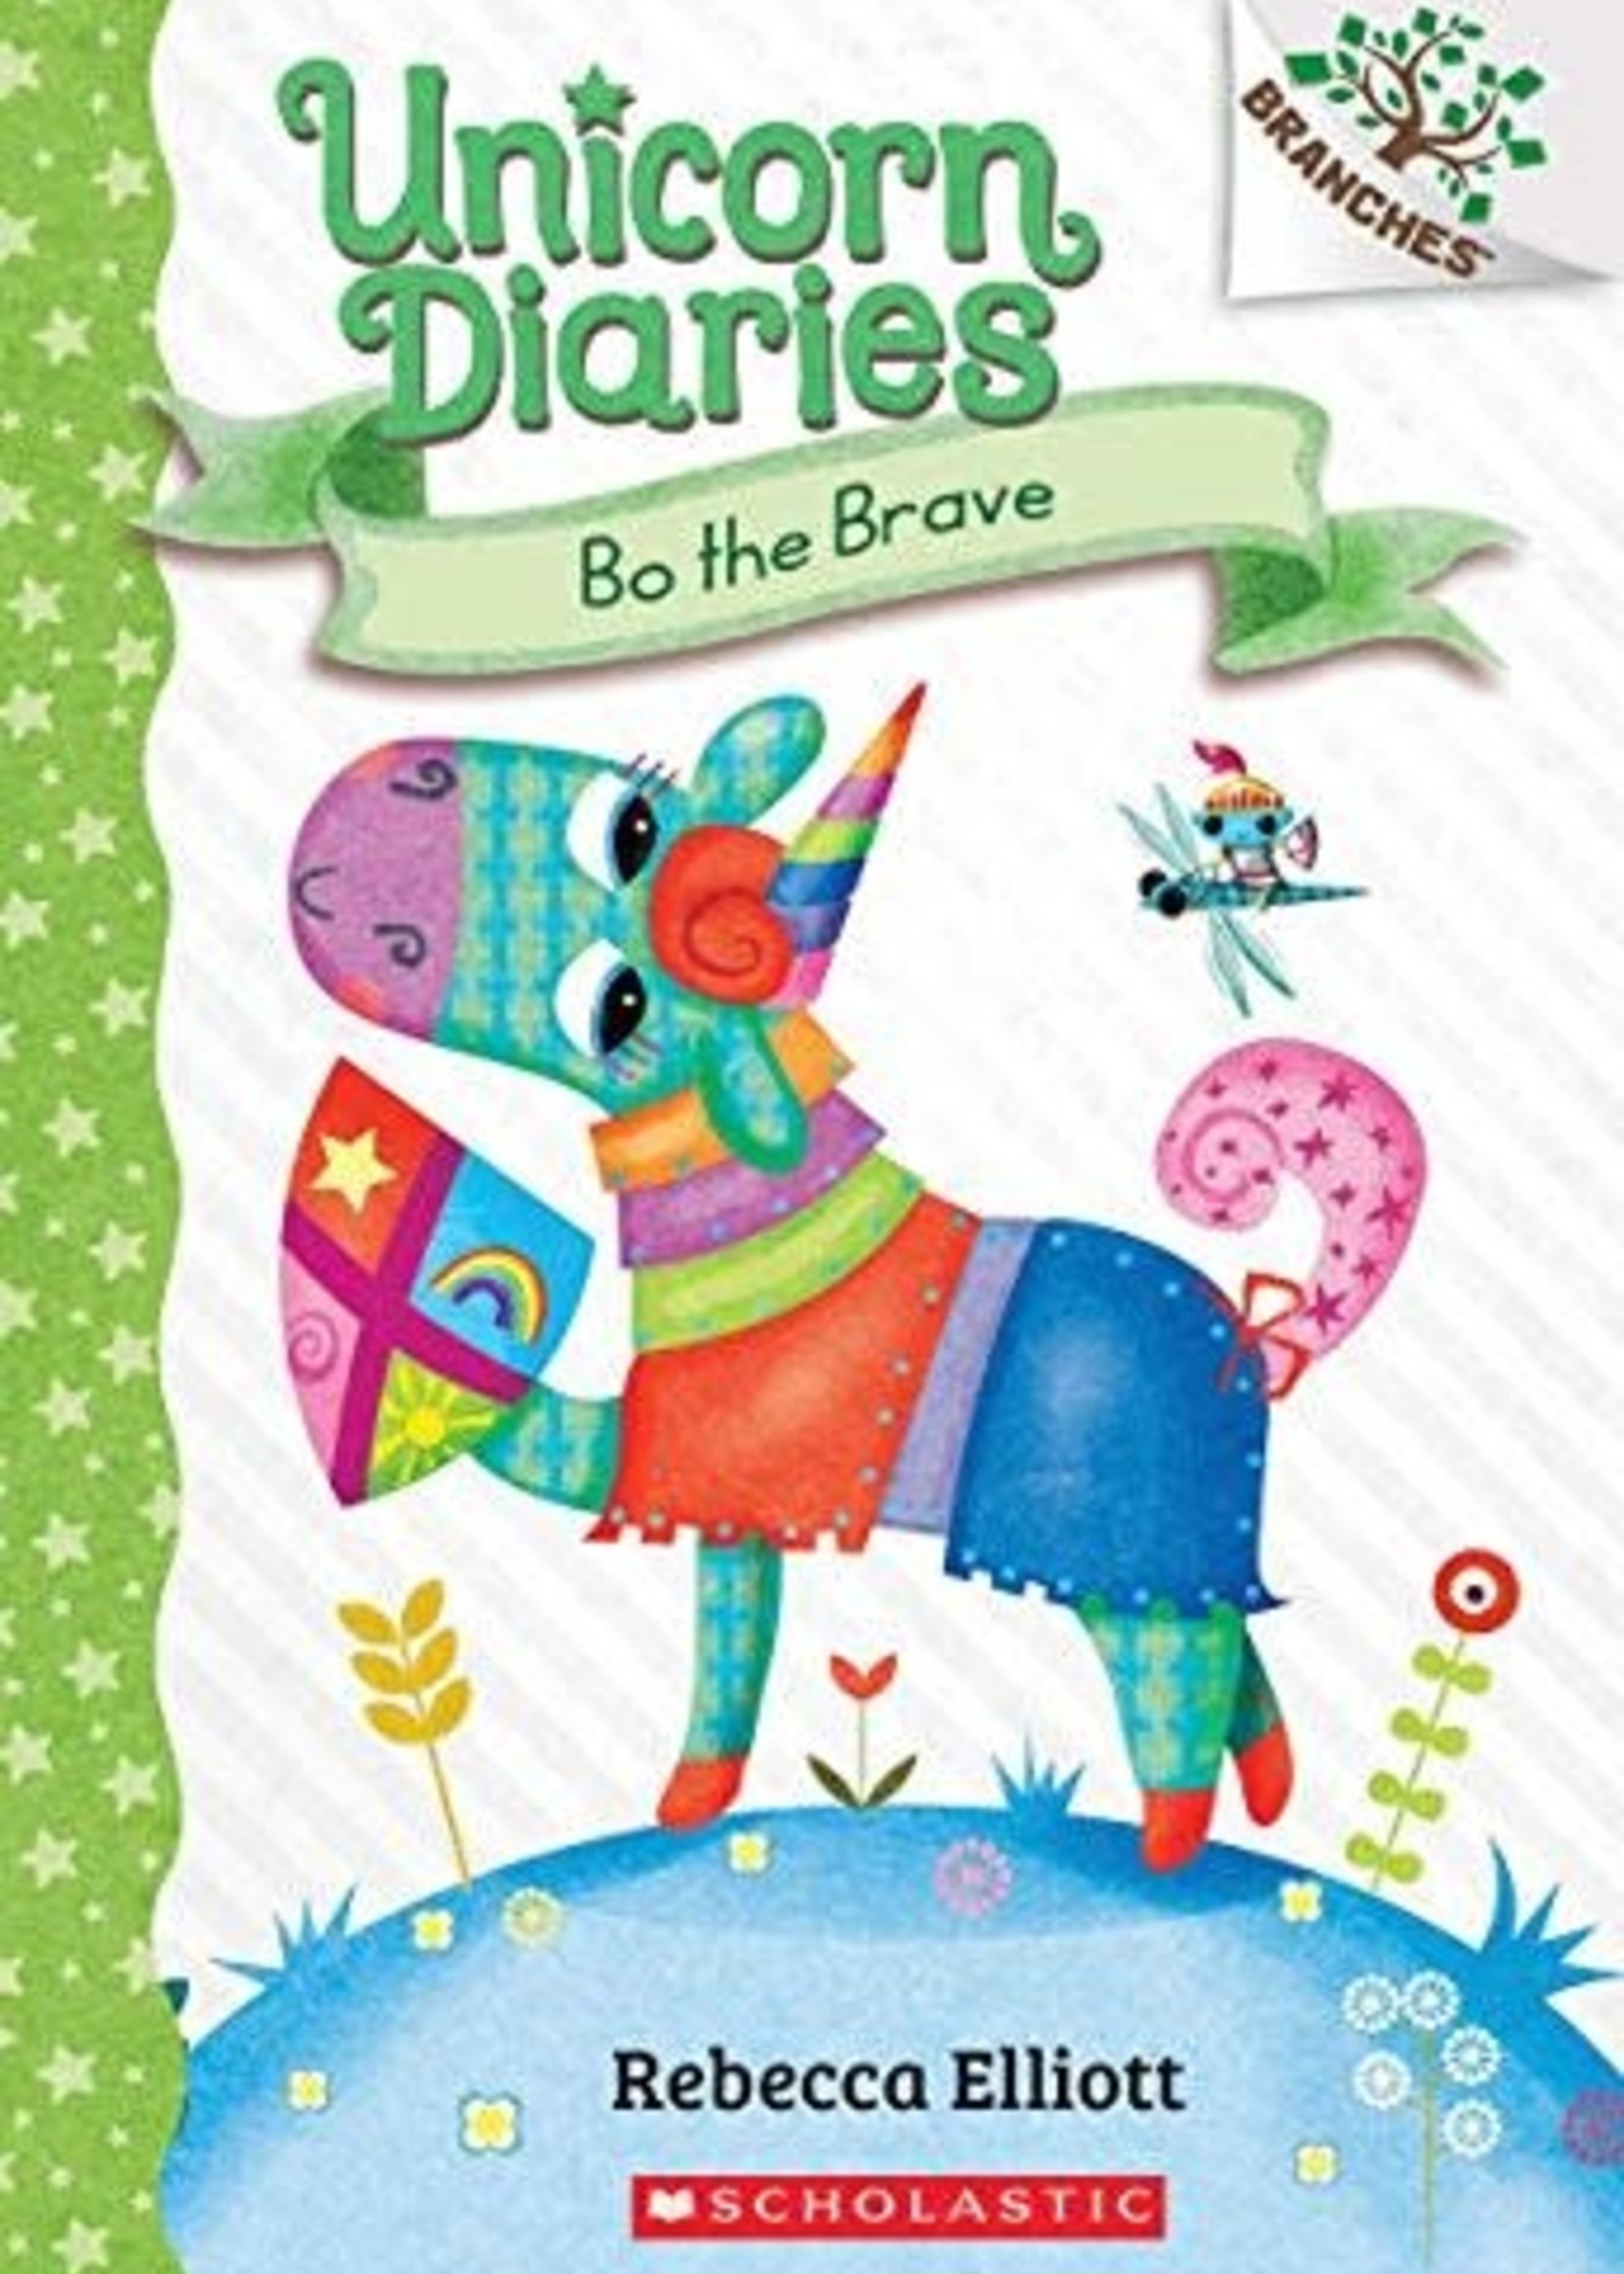 Bo the Brave: A Branches Book (Unicorn Diaries #3) by Rebecca Elliott